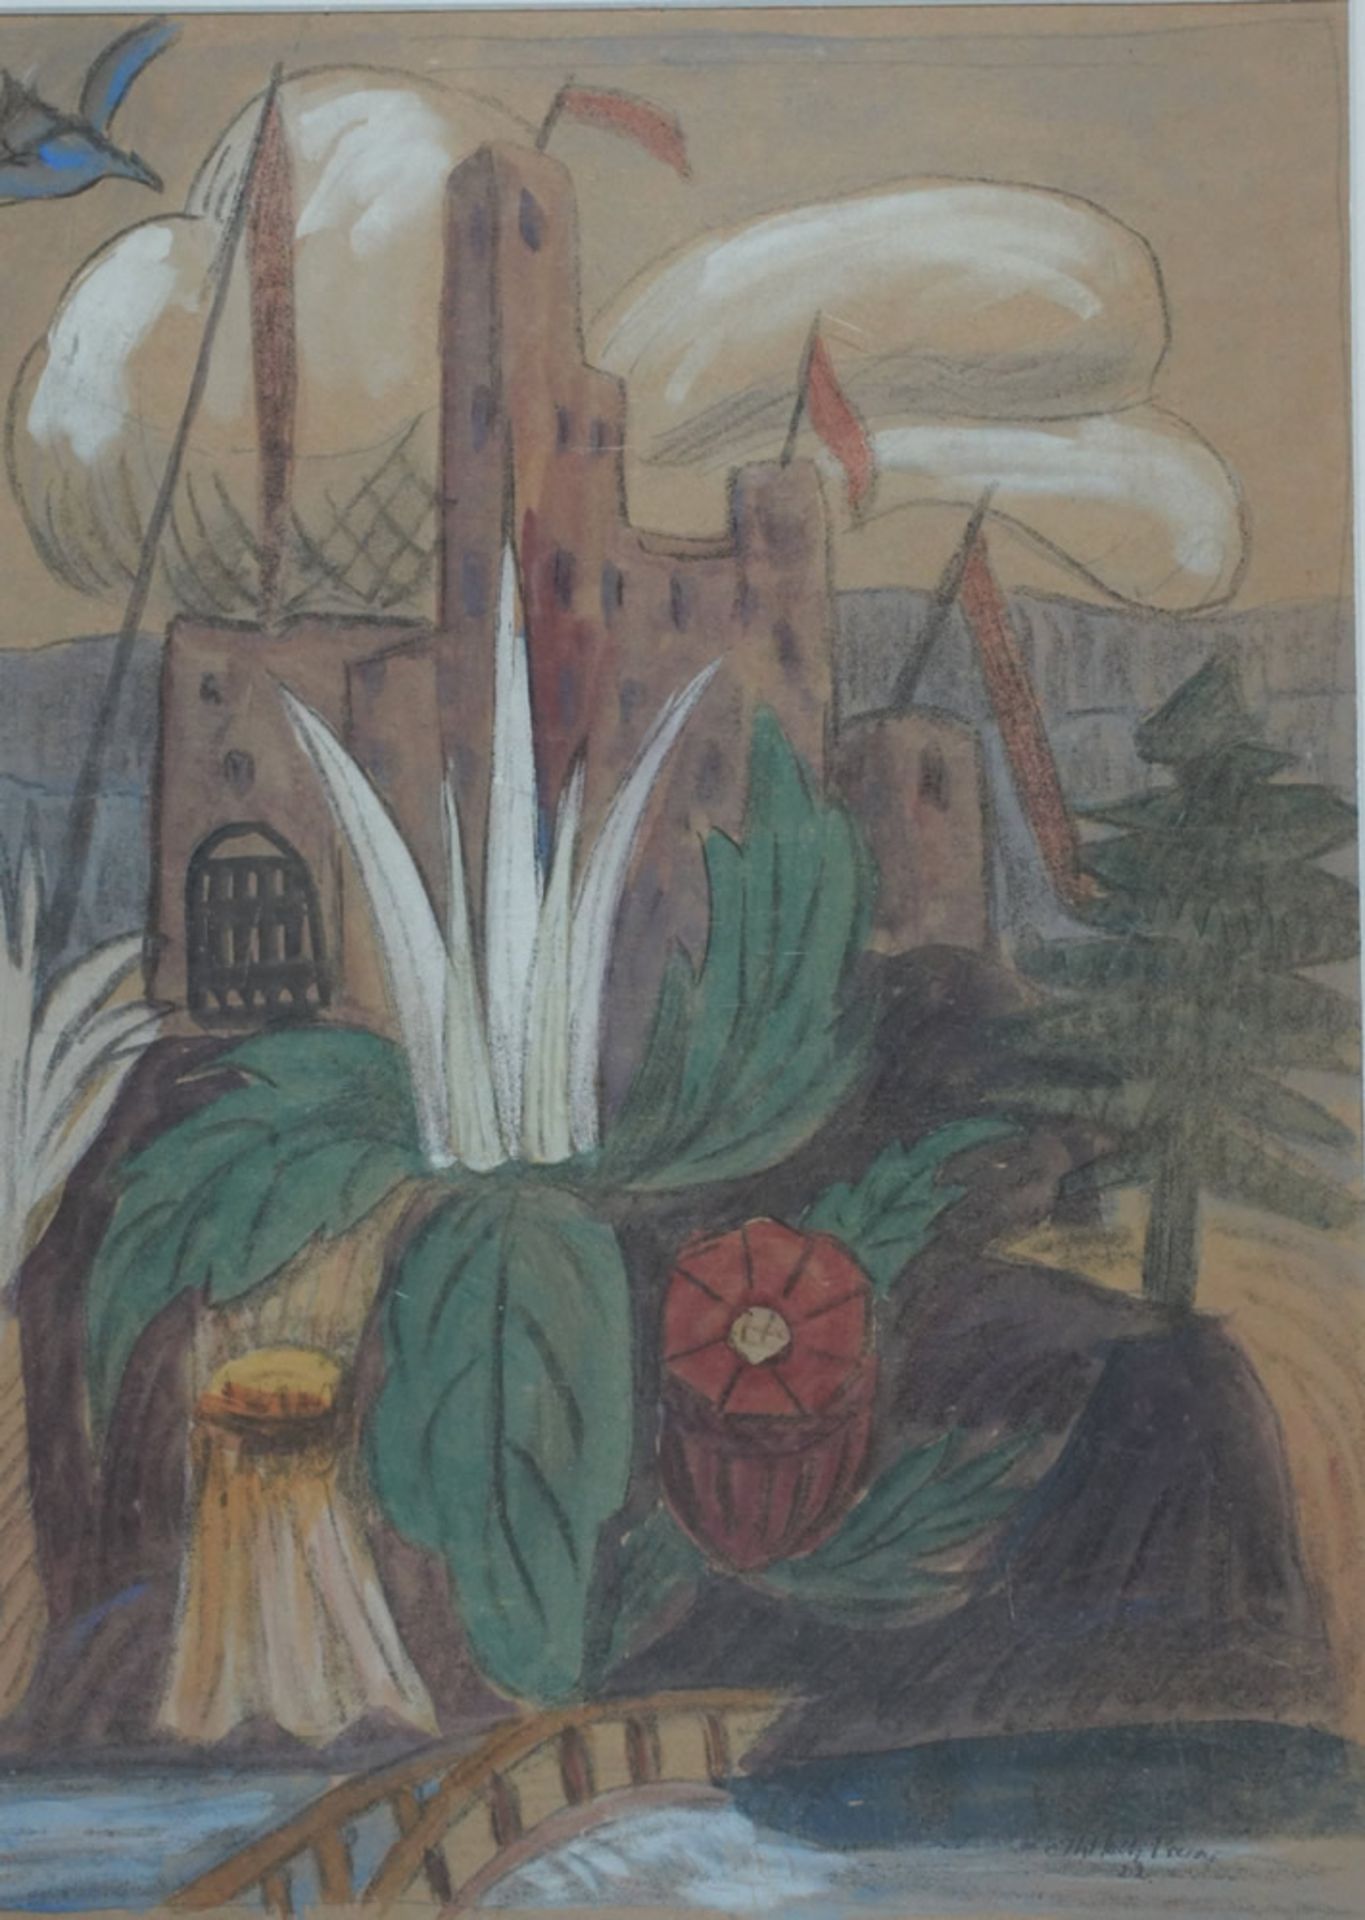 Holtz, Erich Theodor, Prerow 1922, Mischt., 45 x 32 cm, sign.